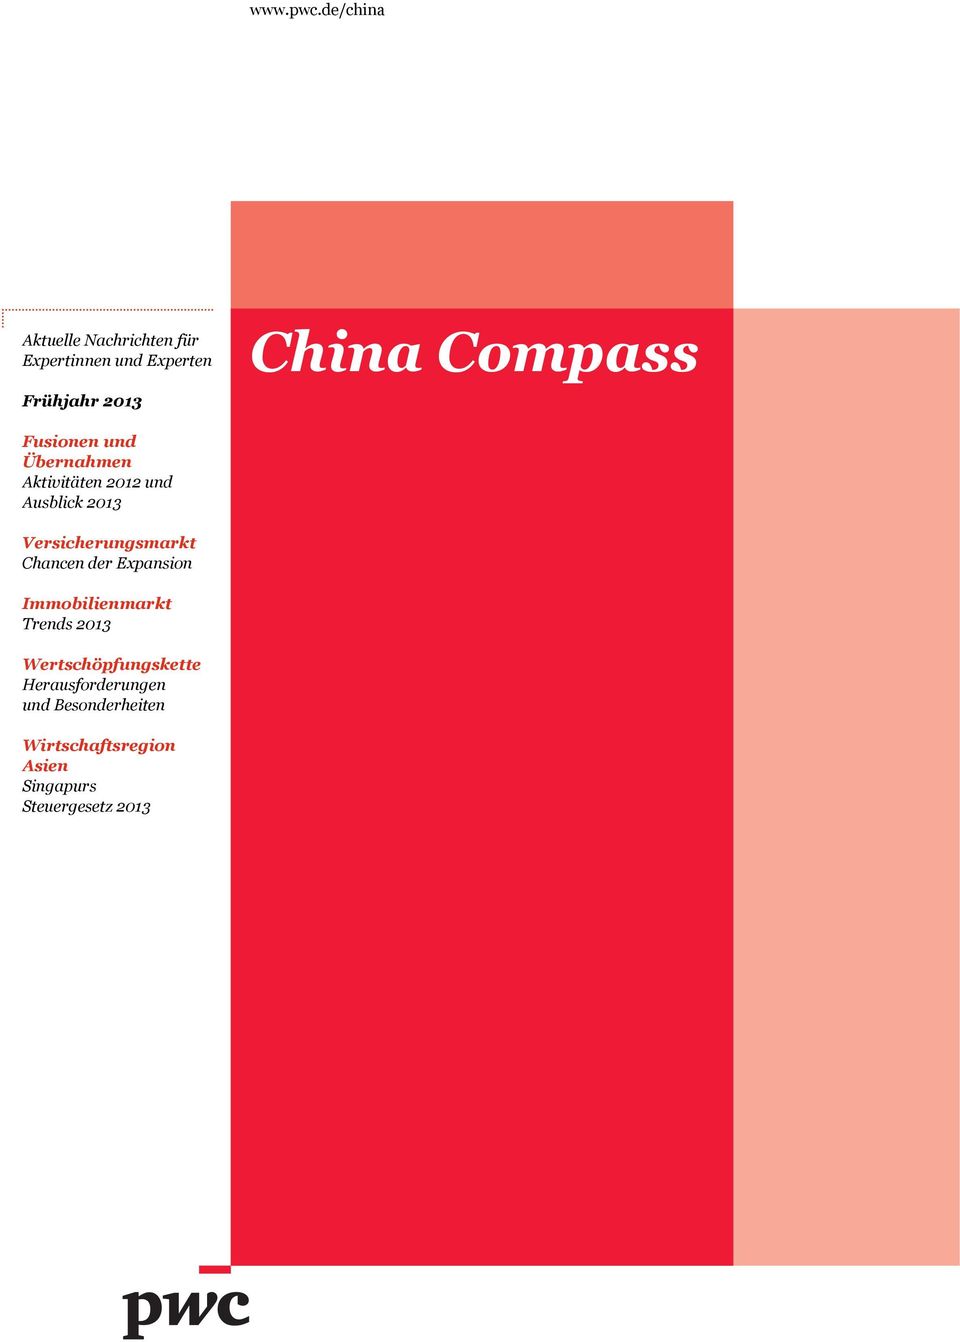 Compass Fusionen und Übernahmen Aktivitäten 2012 und Ausblick 2013